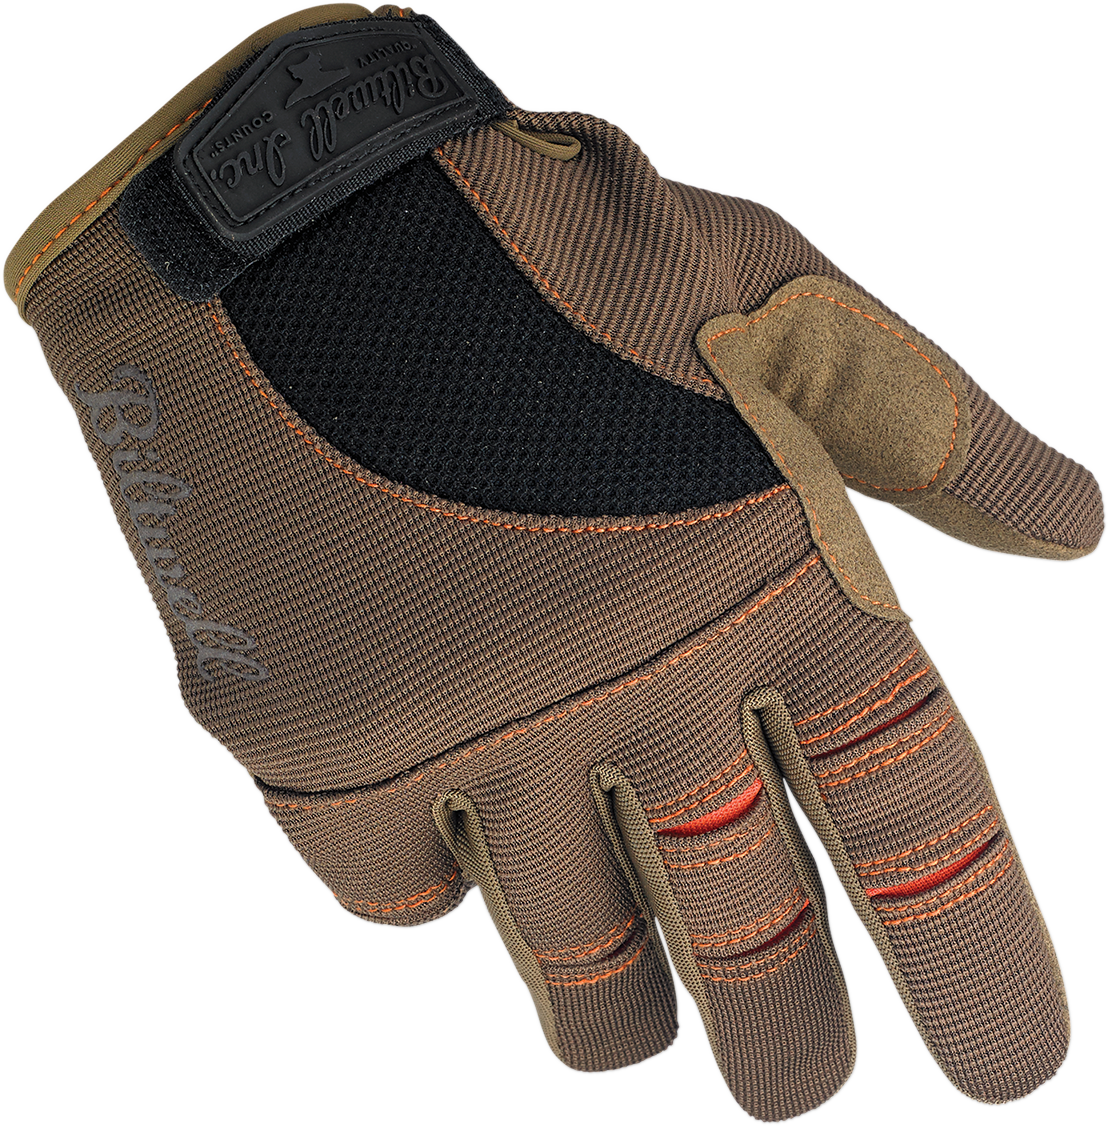 BILTWELL Moto Gloves - Brown/Orange